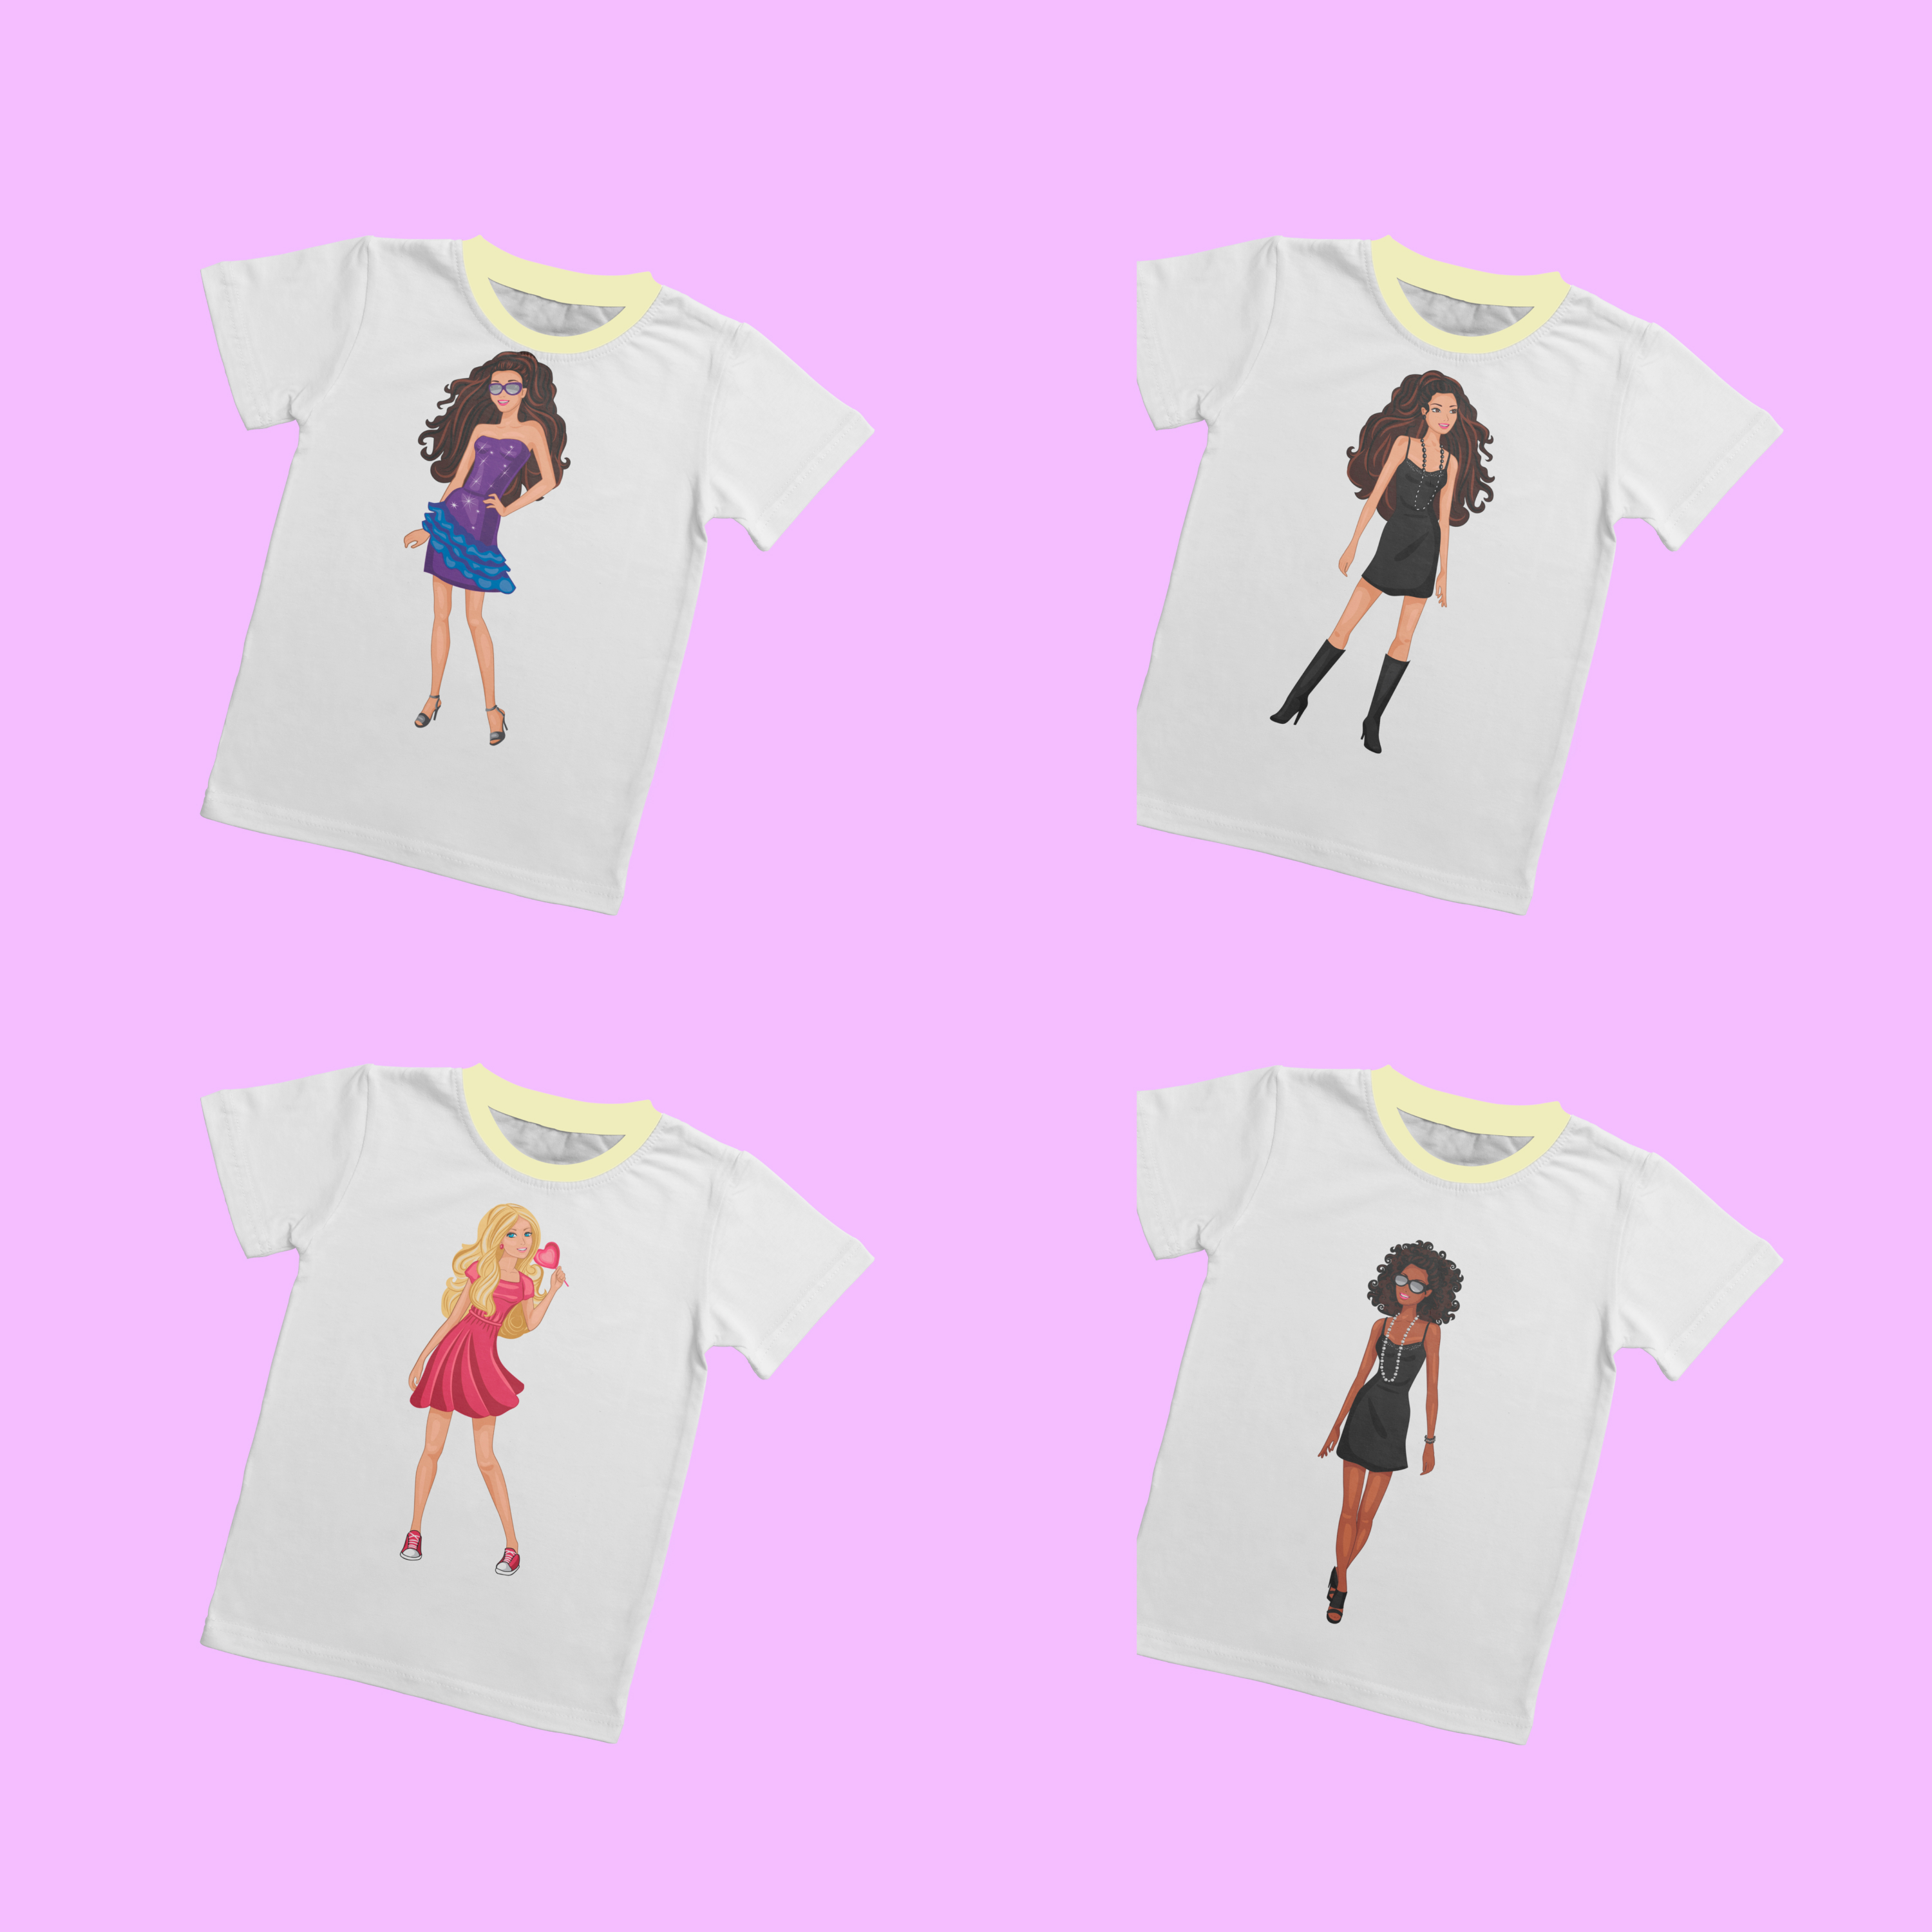 Preview come on barbie lets go party t shirt designs bundle.